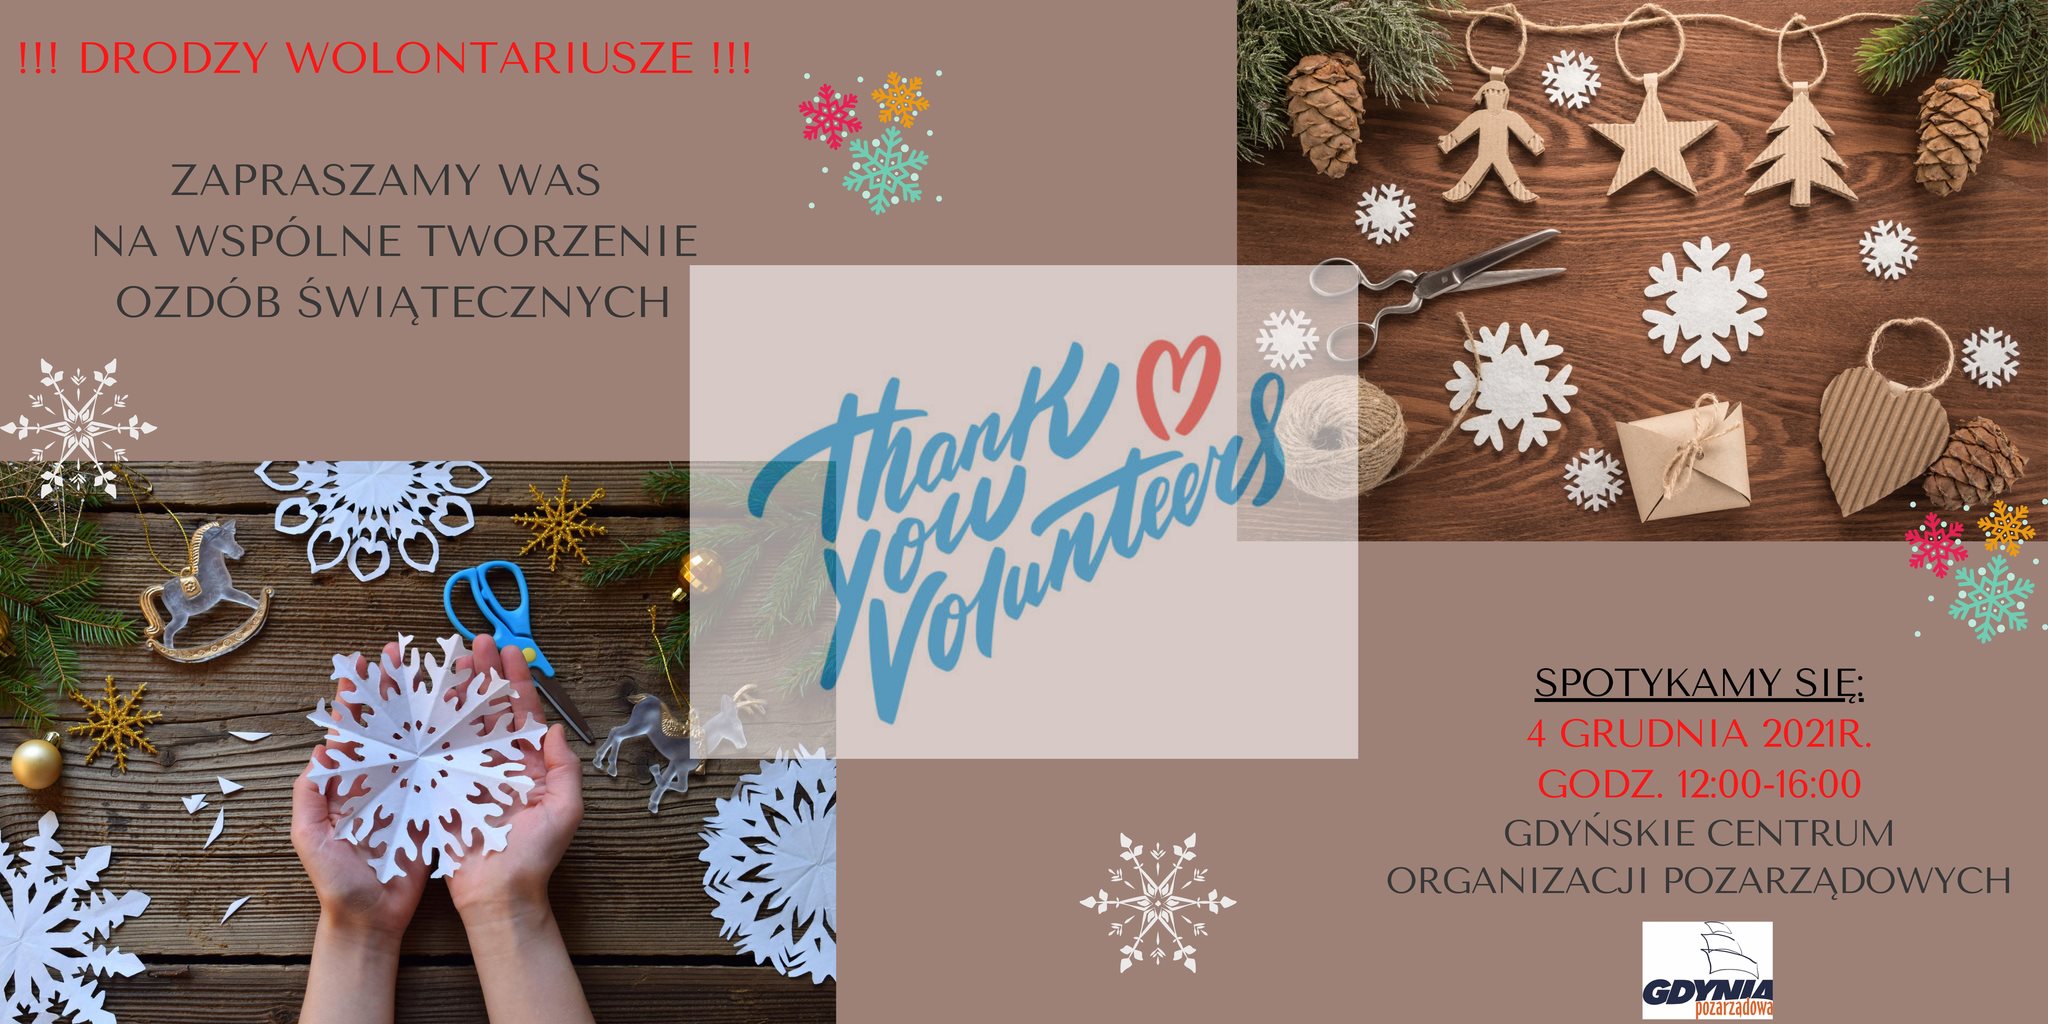 Zapraszamy wolontariuszy na warsztaty świąteczne do Gdyńskiego Centrum Wolontariatu- NIE PRZYJMUJEMY JUŻ ZGŁOSZEŃ!!!